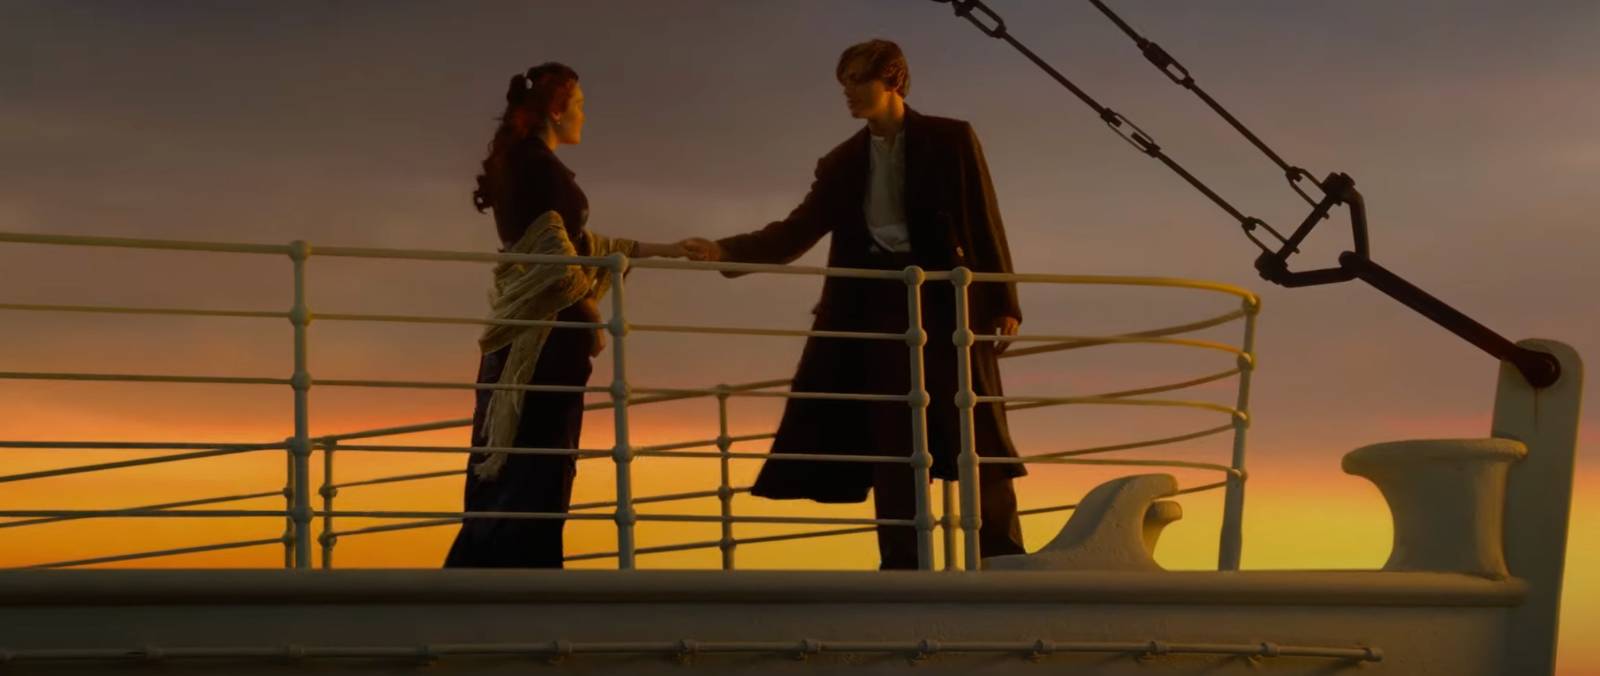 Titanic 3D, Rose Arrives at the Titanic